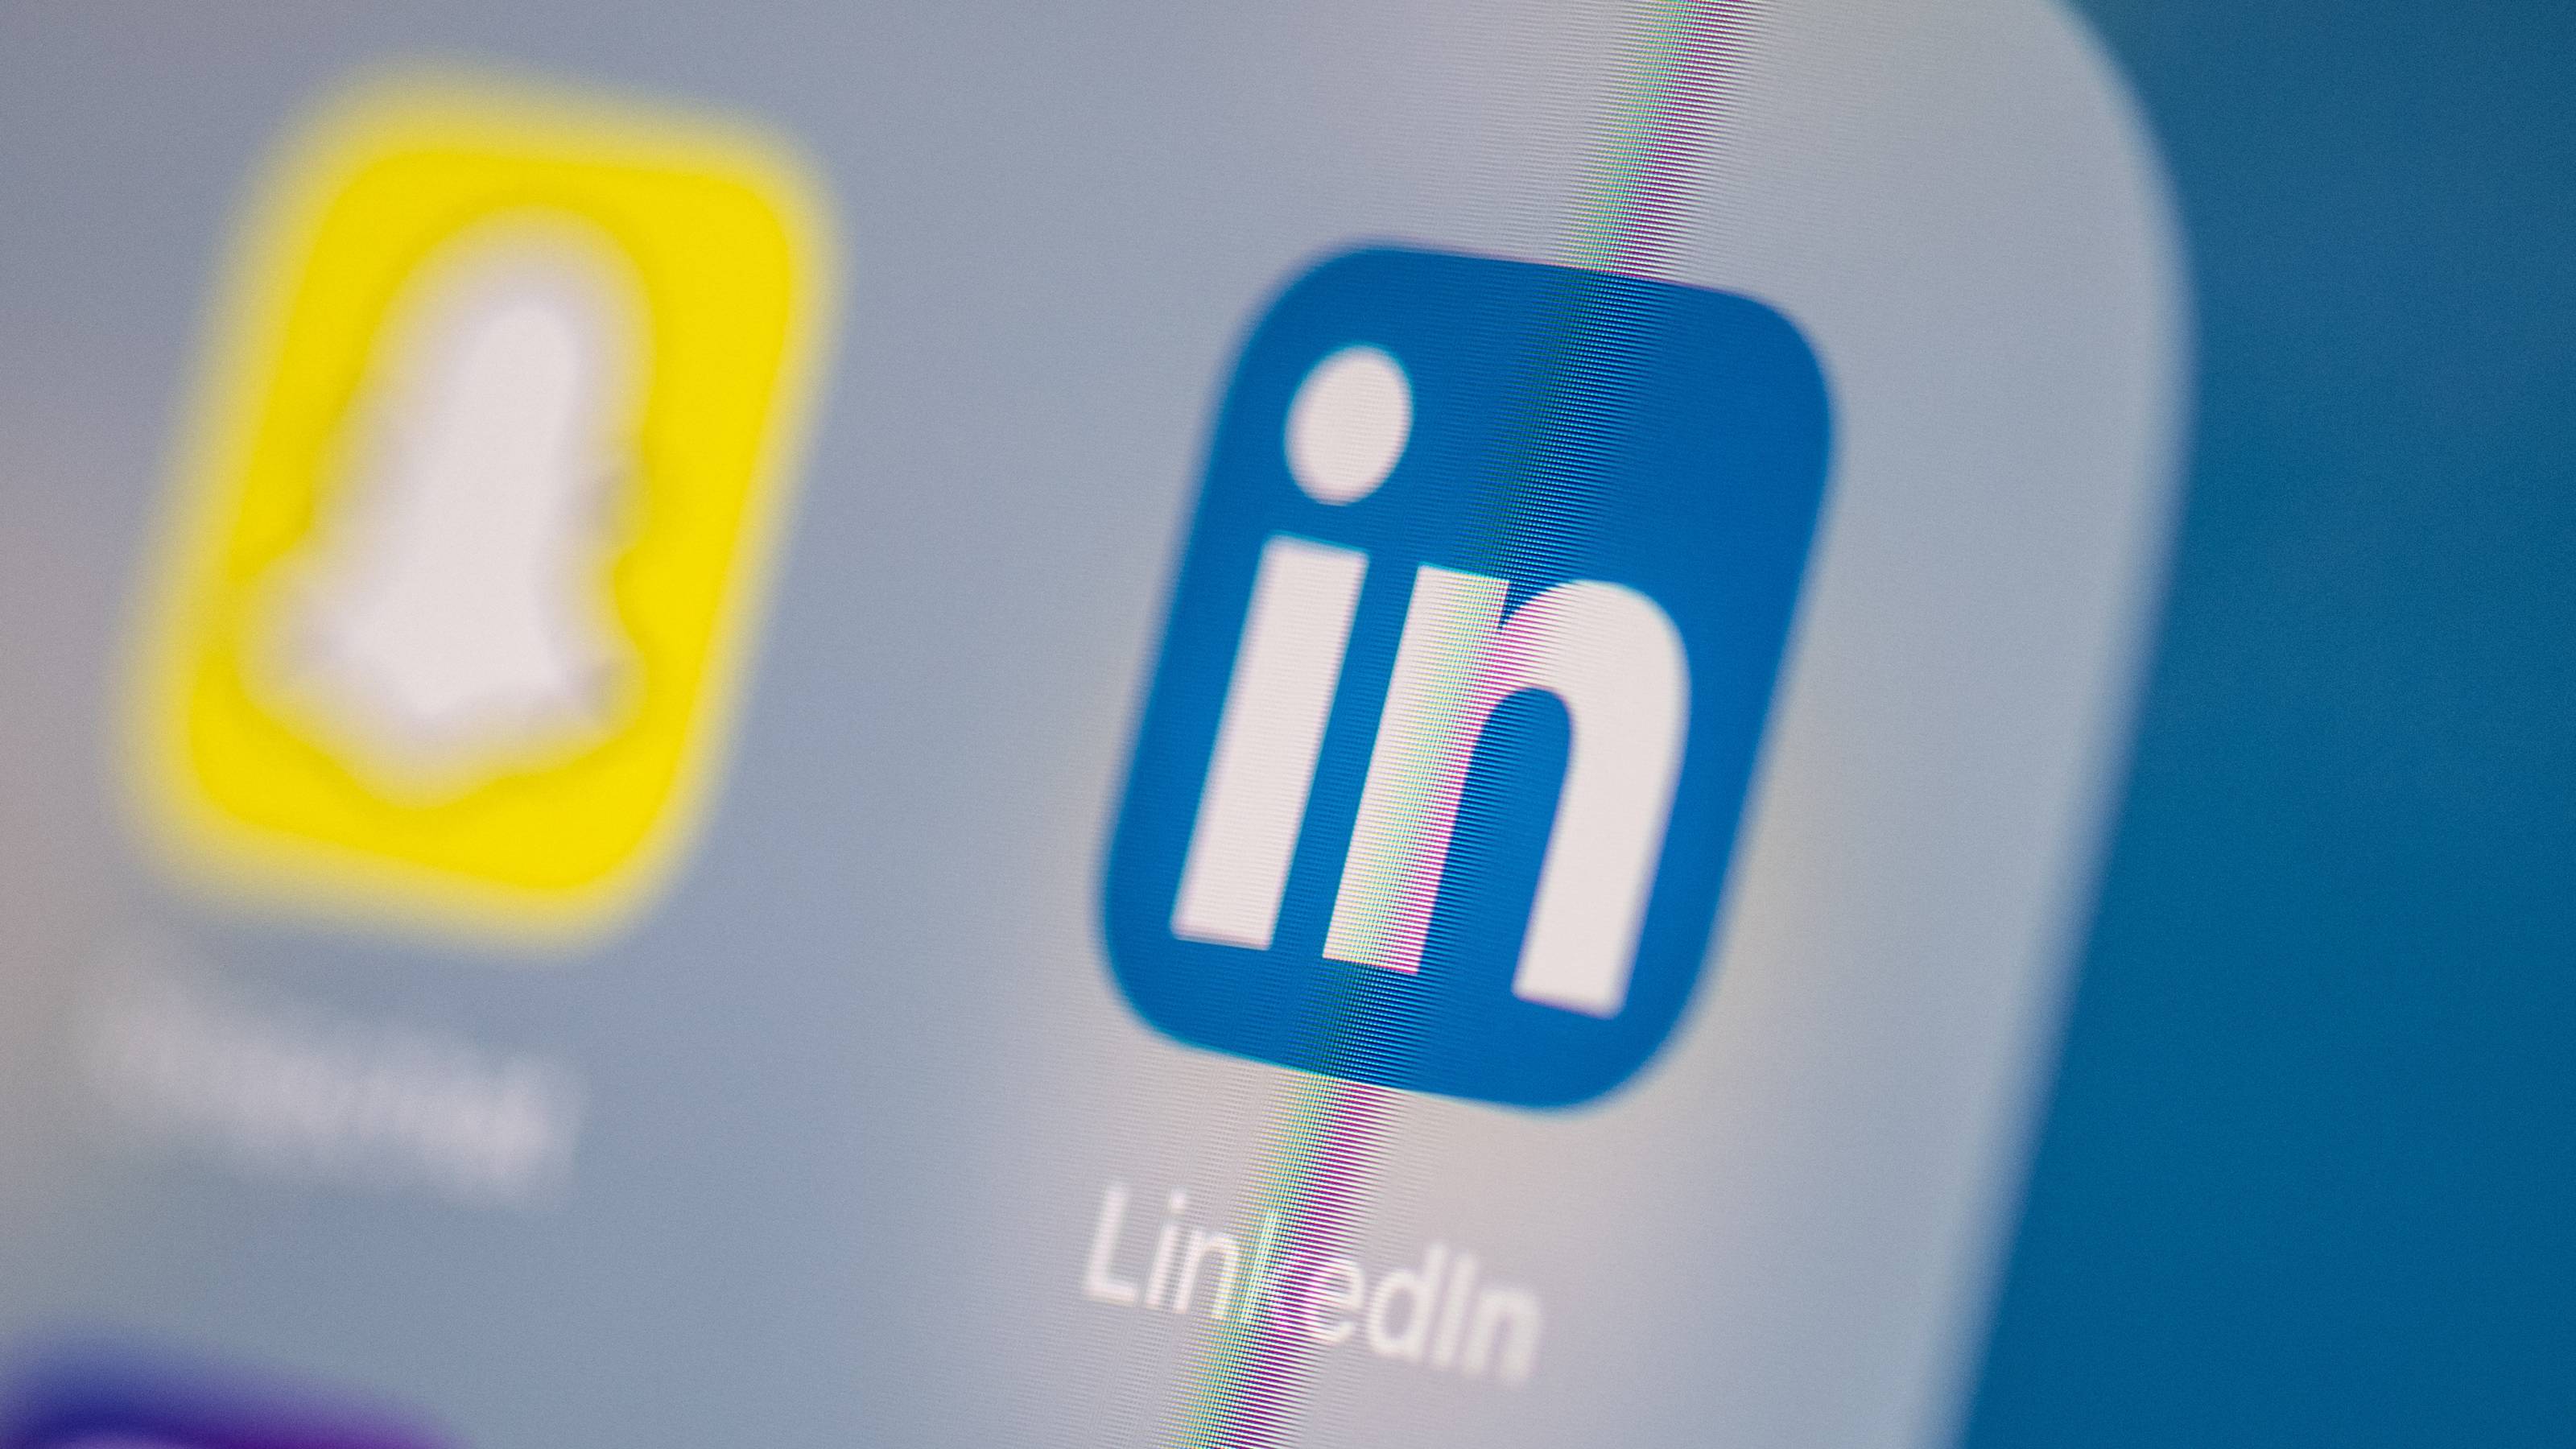 Россия и Китай используют для шпионажа LinkedIn — разведка Нидерландов